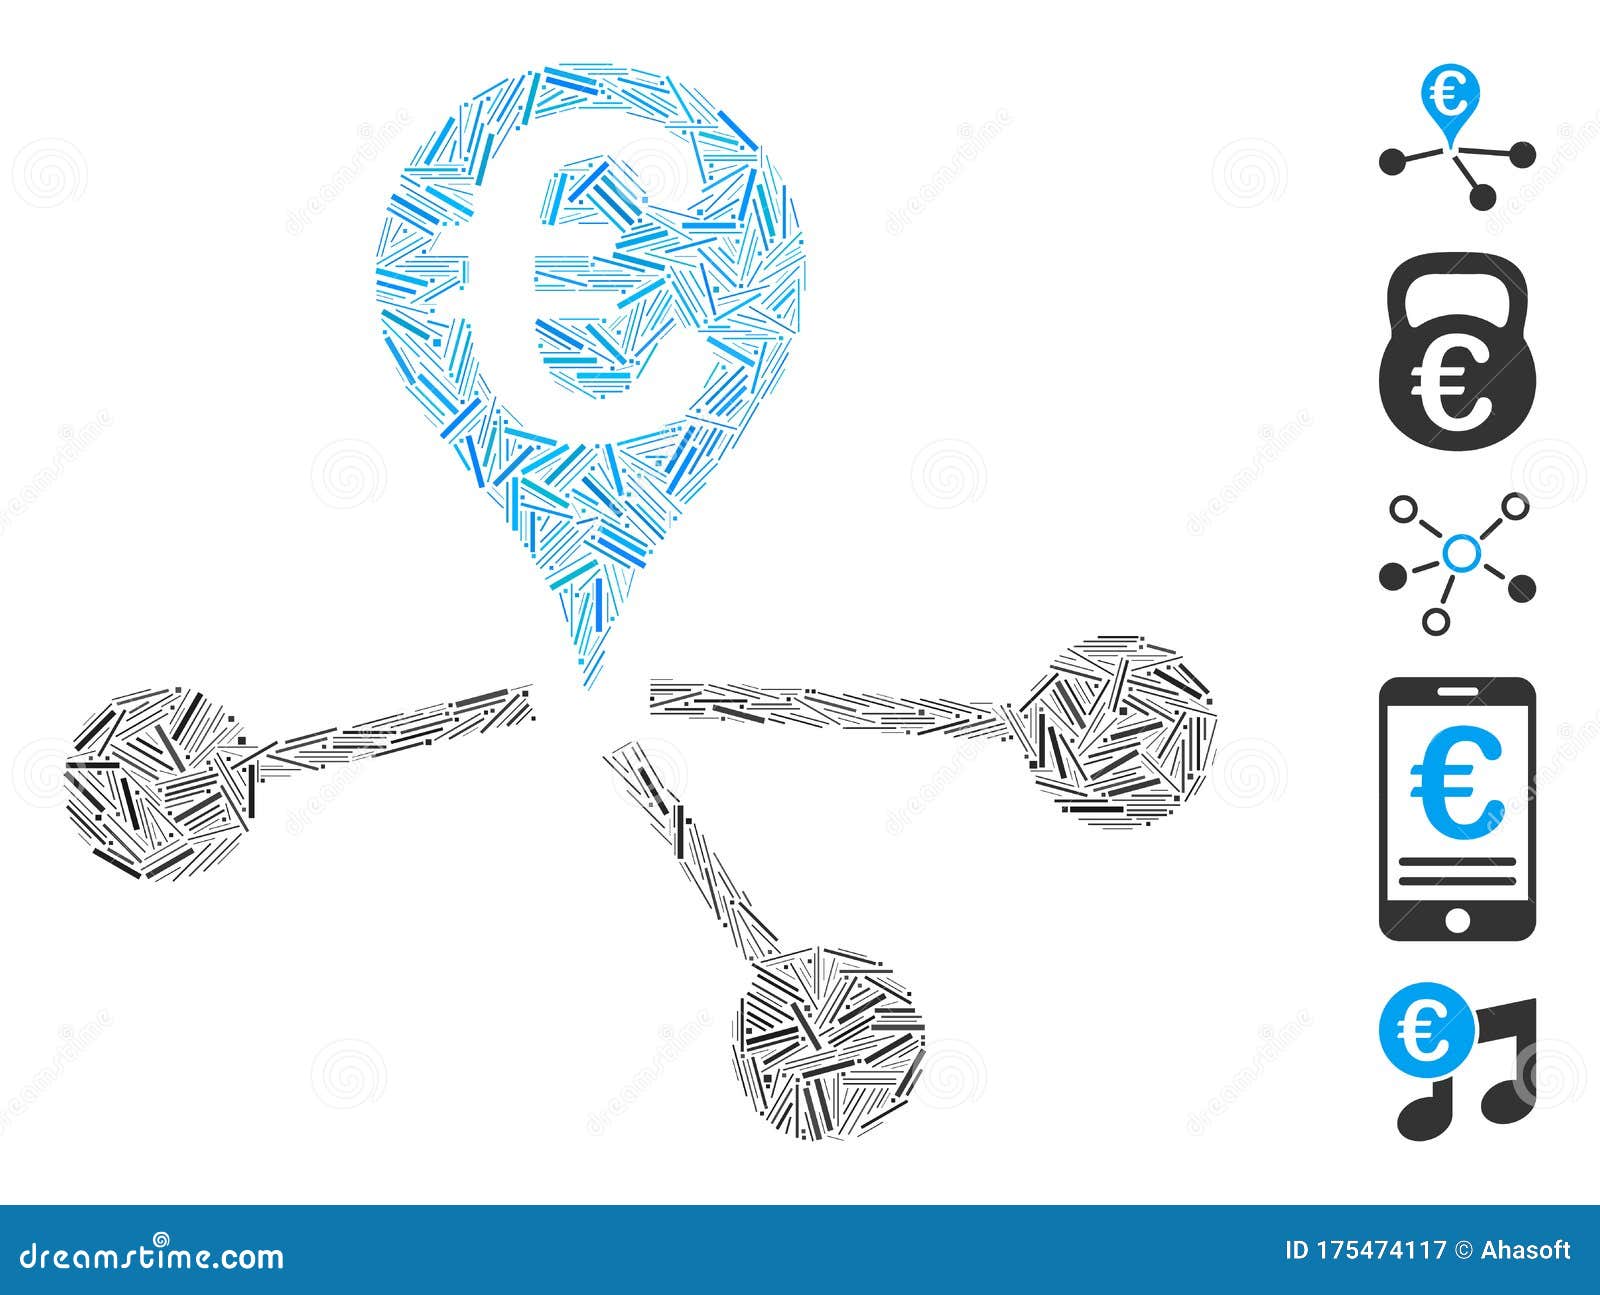 Konvertuoti Dashes (DASH) ir Eurų (EUR) : Valiuta valiutų keitimo kurso skaičiuoklė